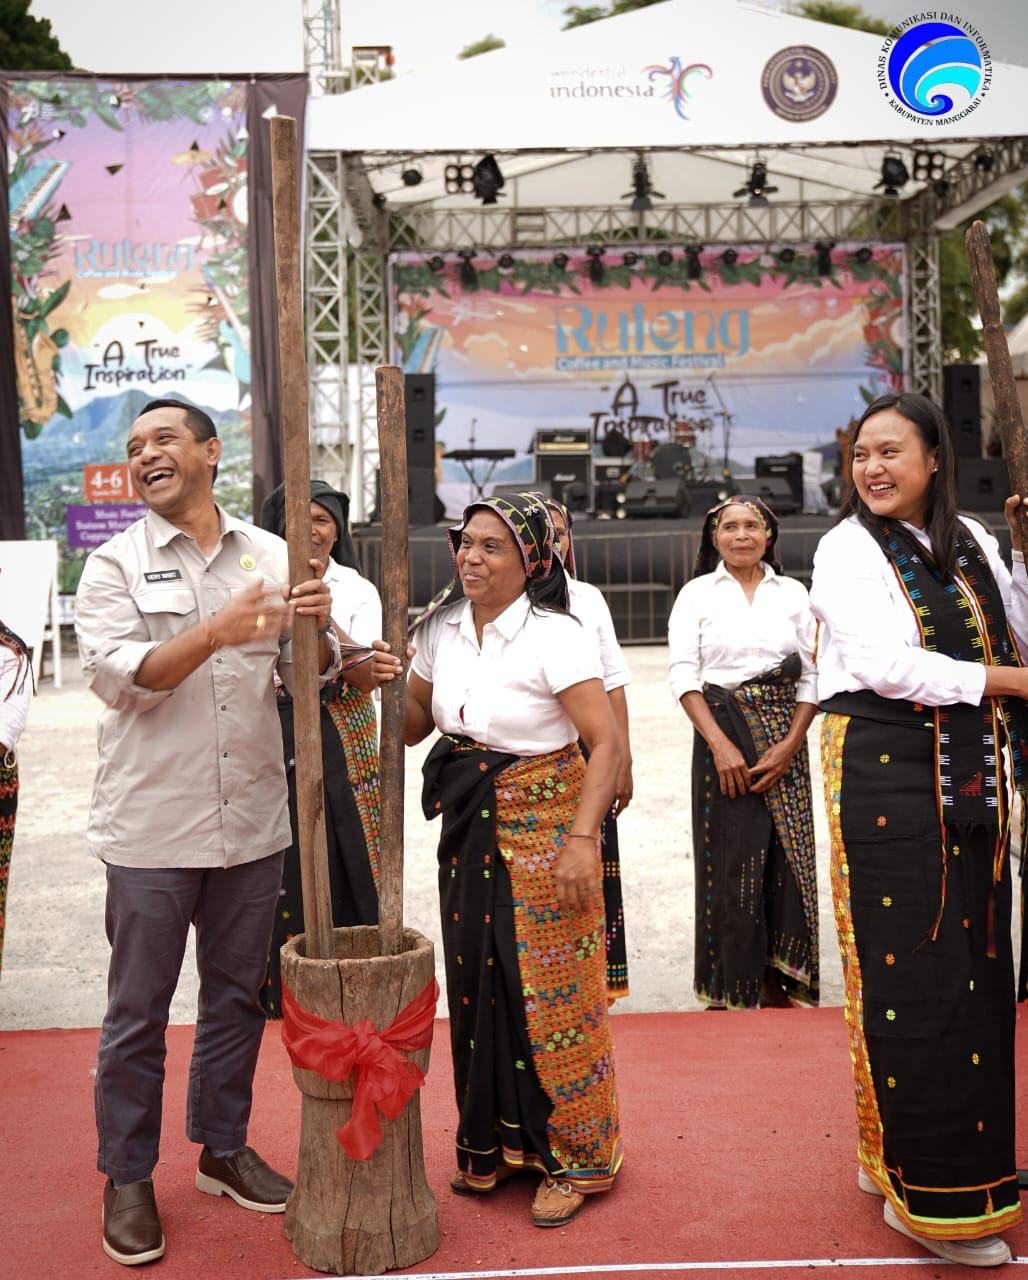 Festival Kopi Kembali Digelar, Bupati Hery Berharap Bisa Menjadi Kegiatan Positif dan Memberikan Dampak Bagi Masyarakat